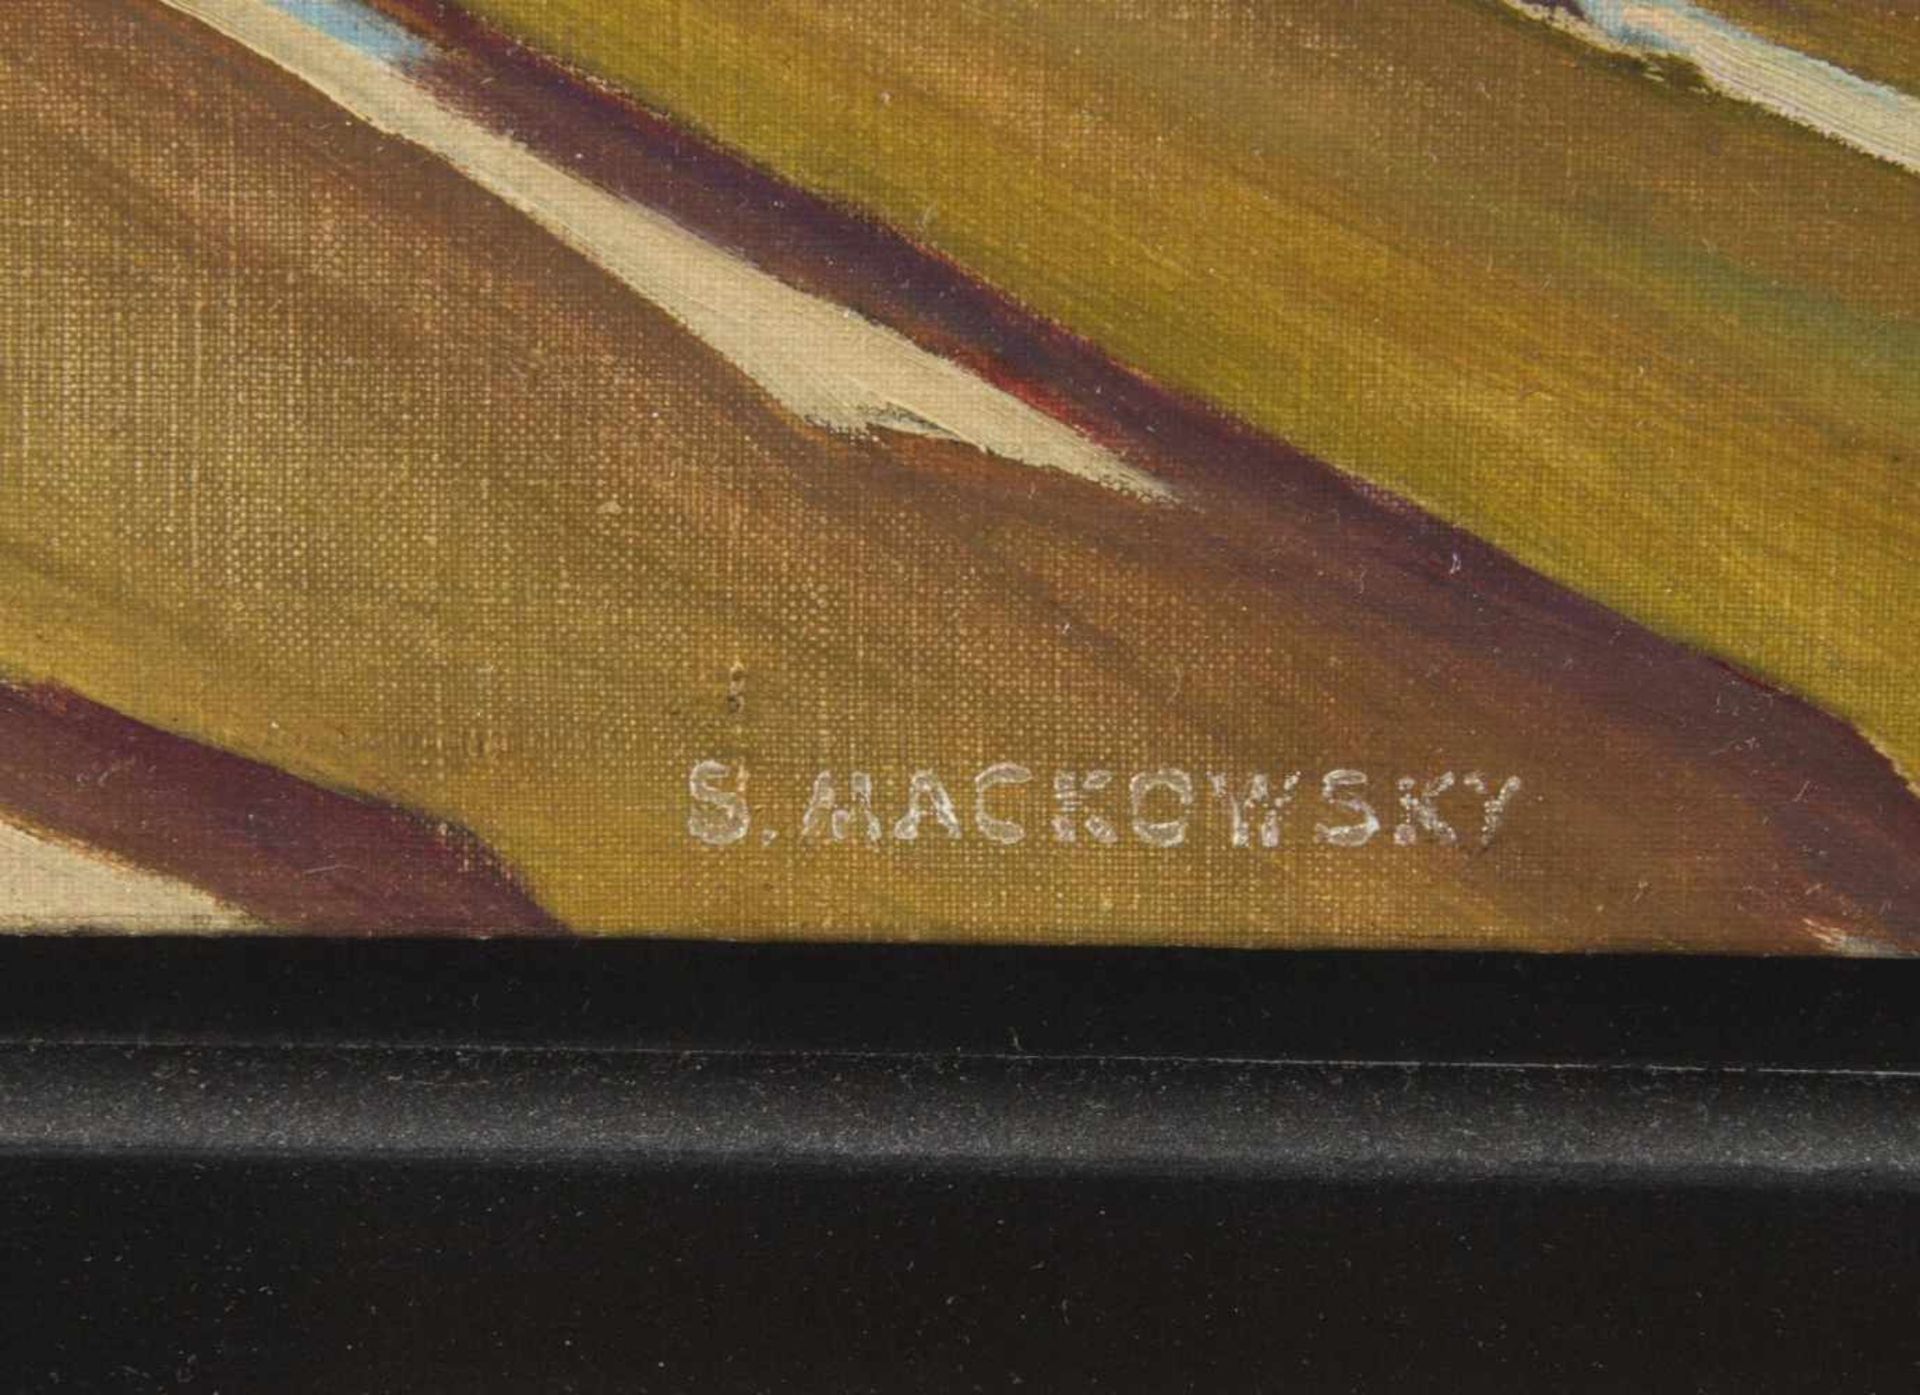 Mackowsky, Siegfried. 1878 - Dresden - 1941Das Matterhorn. Öl/Lwd. Sign. 80,5 x 80,5 cm. Gerahmt. - Bild 2 aus 3